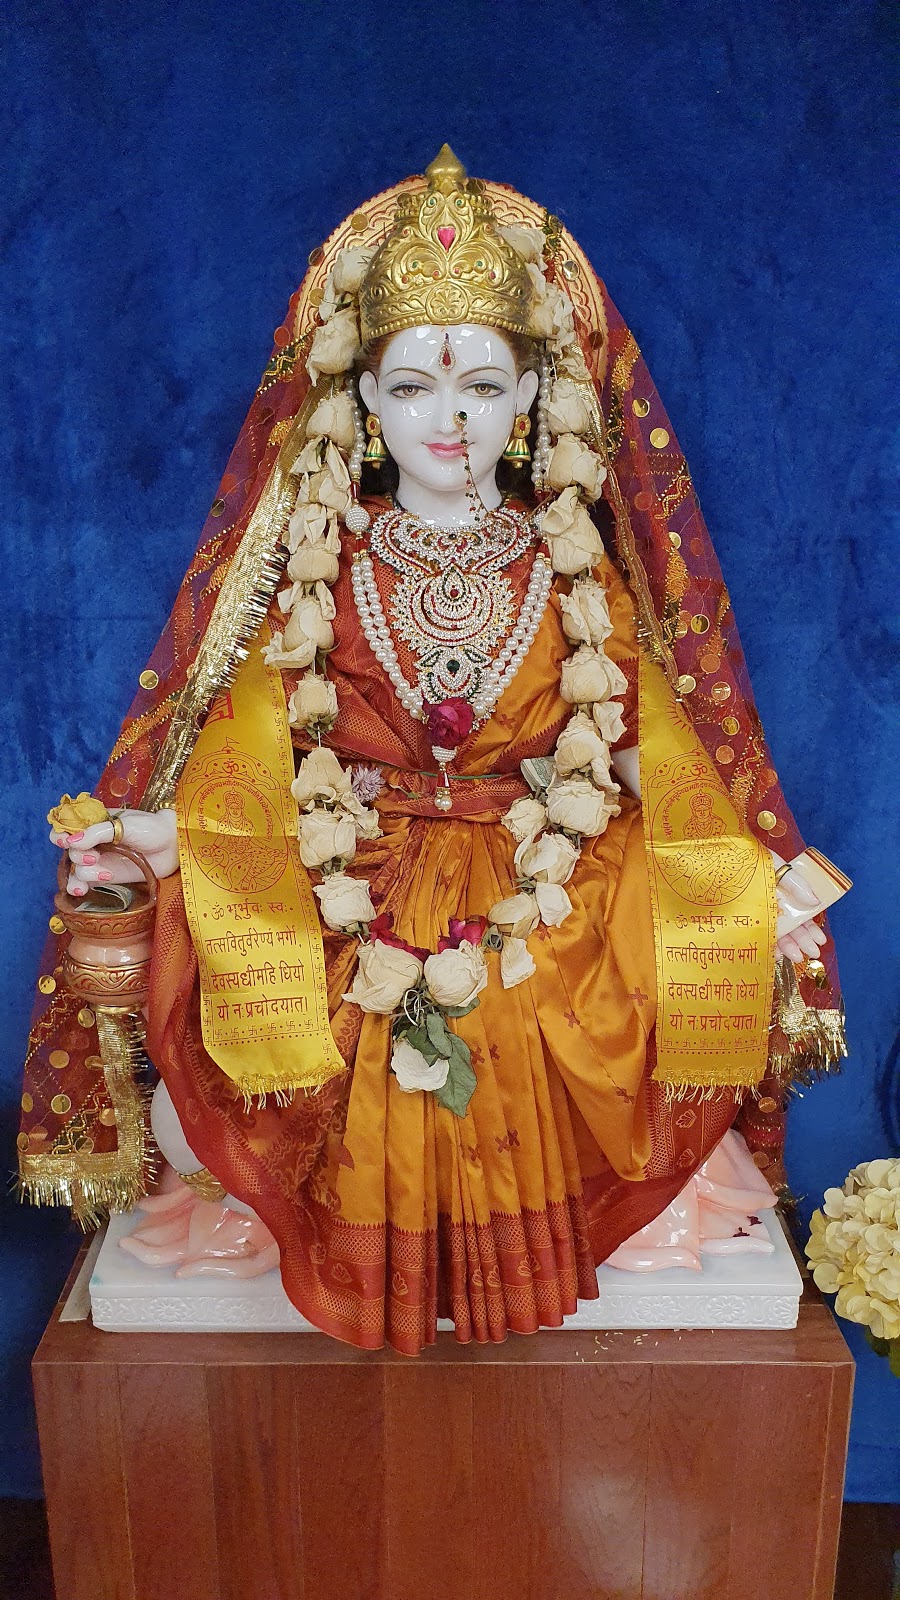 Shri Dwarkamai Shirdi Sai Baba Temple | 267 Boston Rd #9, North Billerica, MA 01862 | Phone: (978) 276-9724